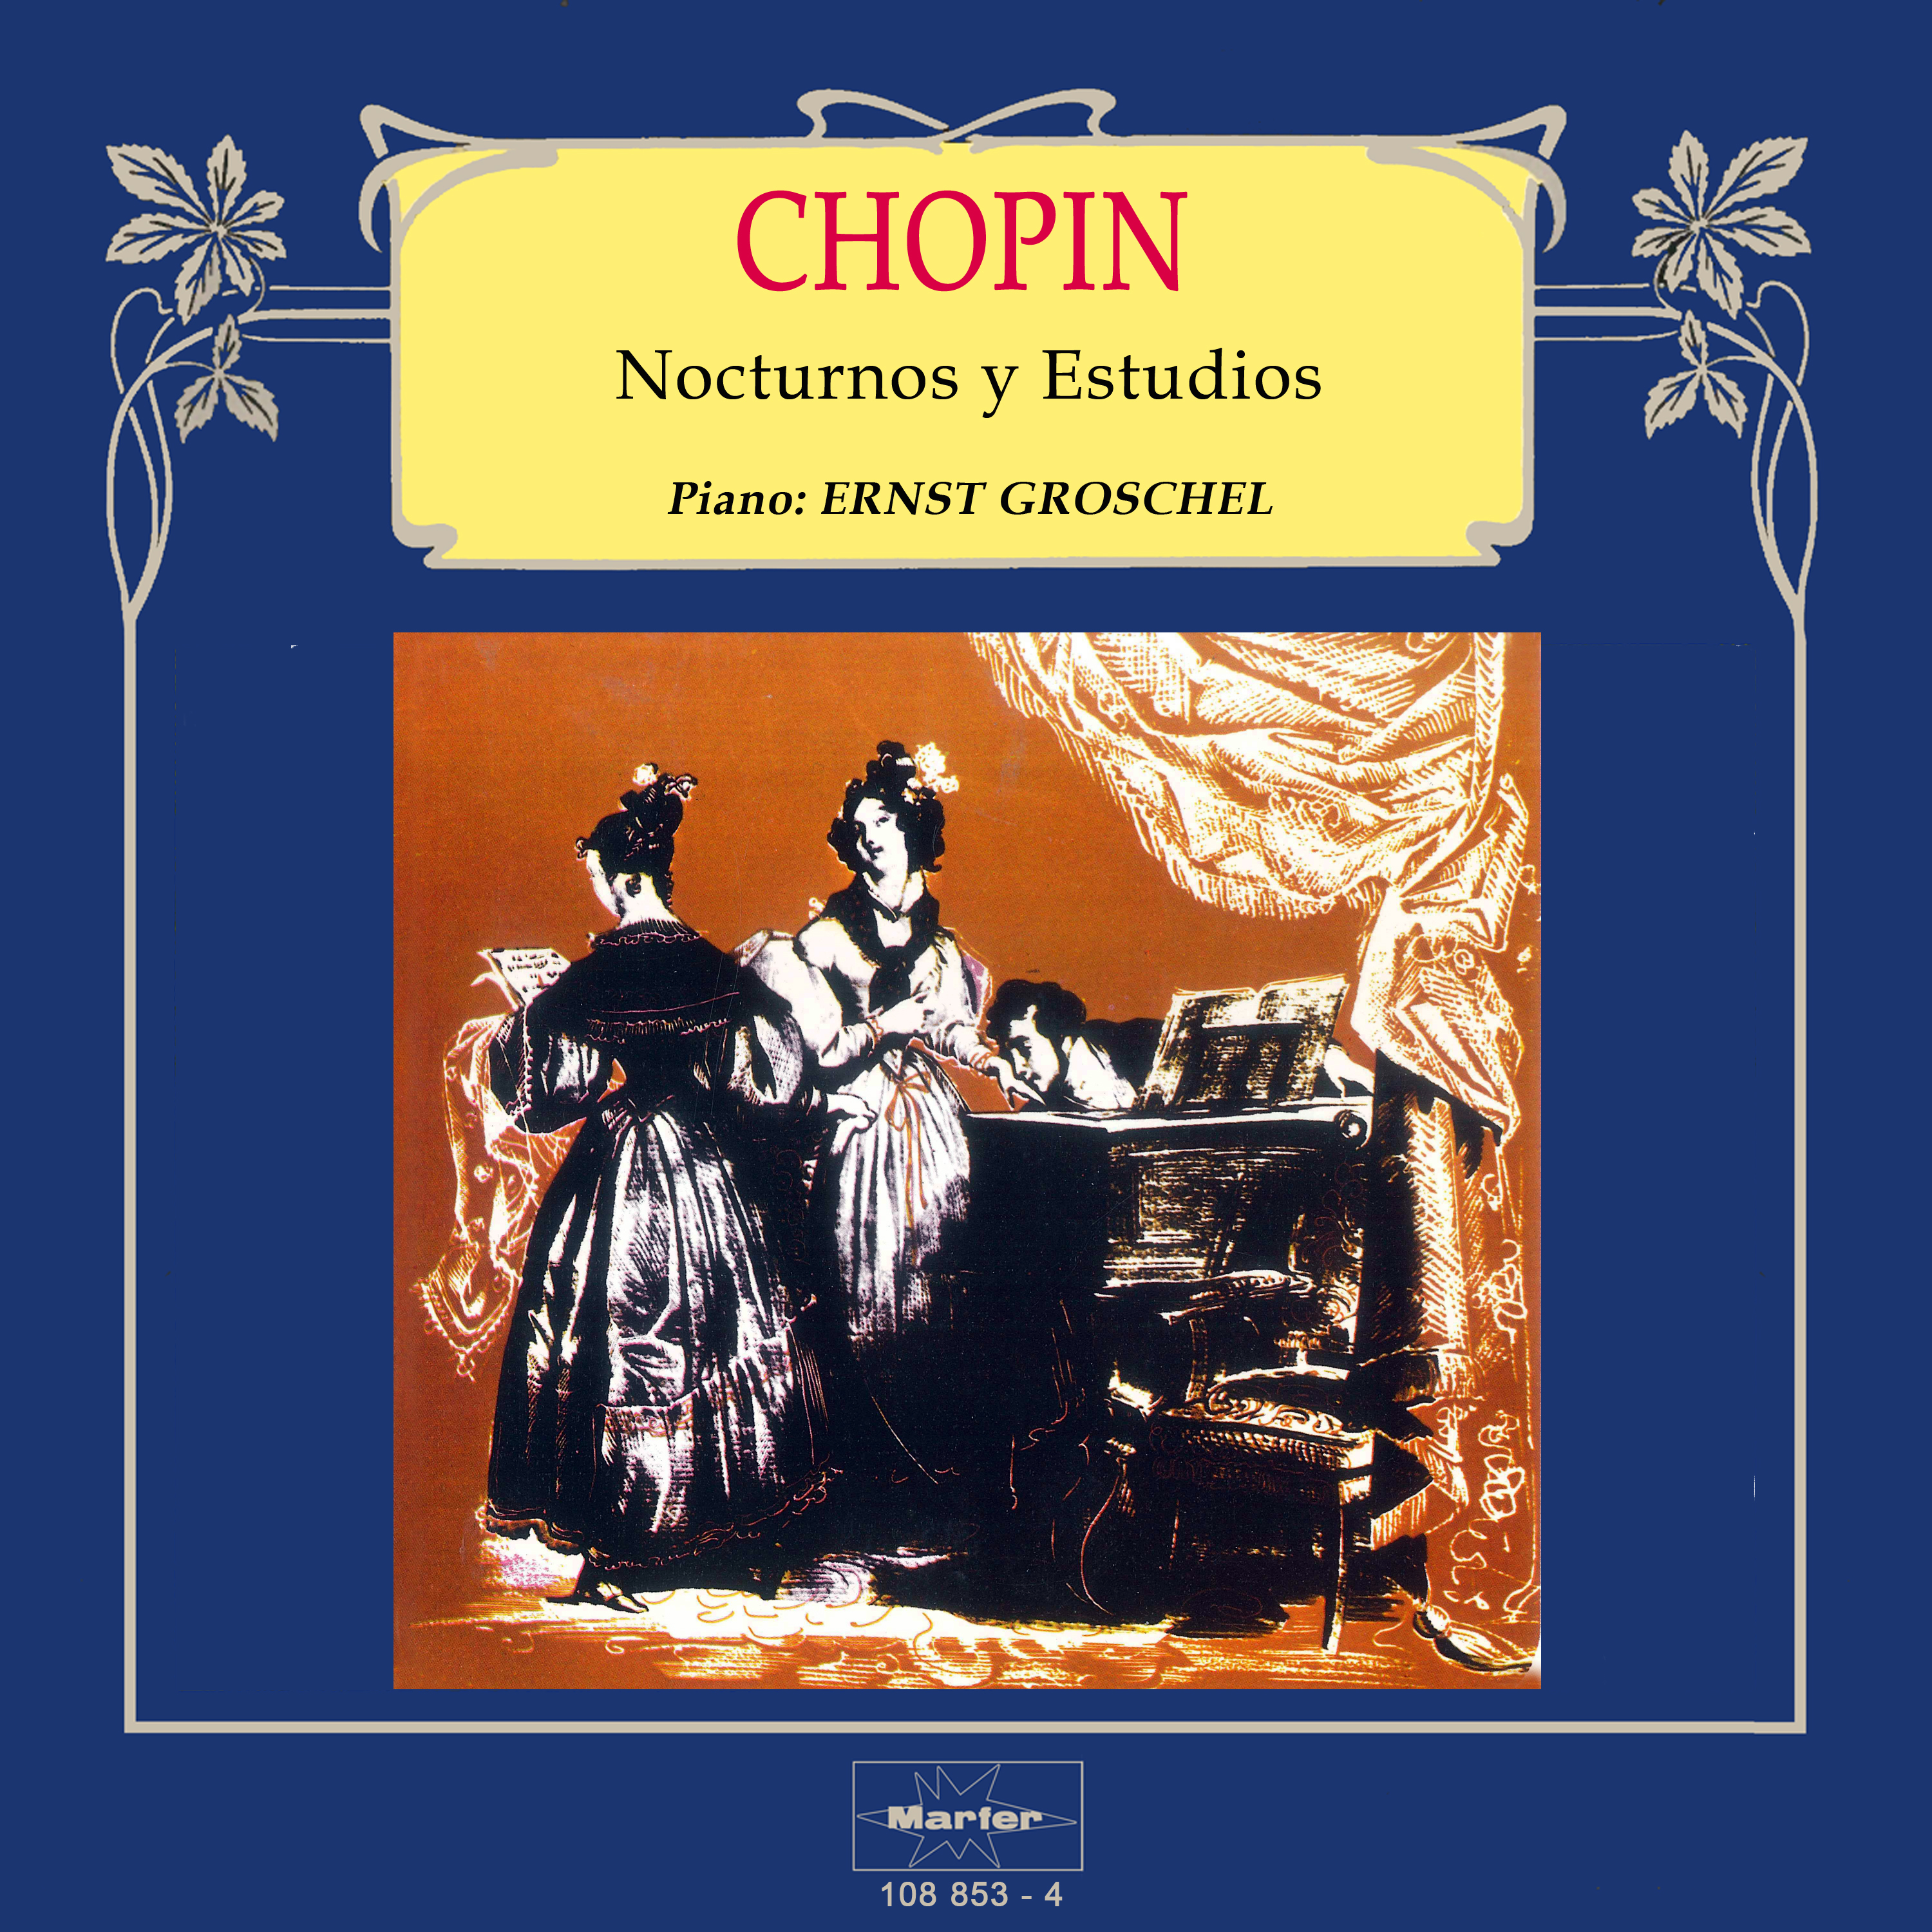 Nocturno No. 7 para piano in C-Sharp Minor, Op. 27, No. 1